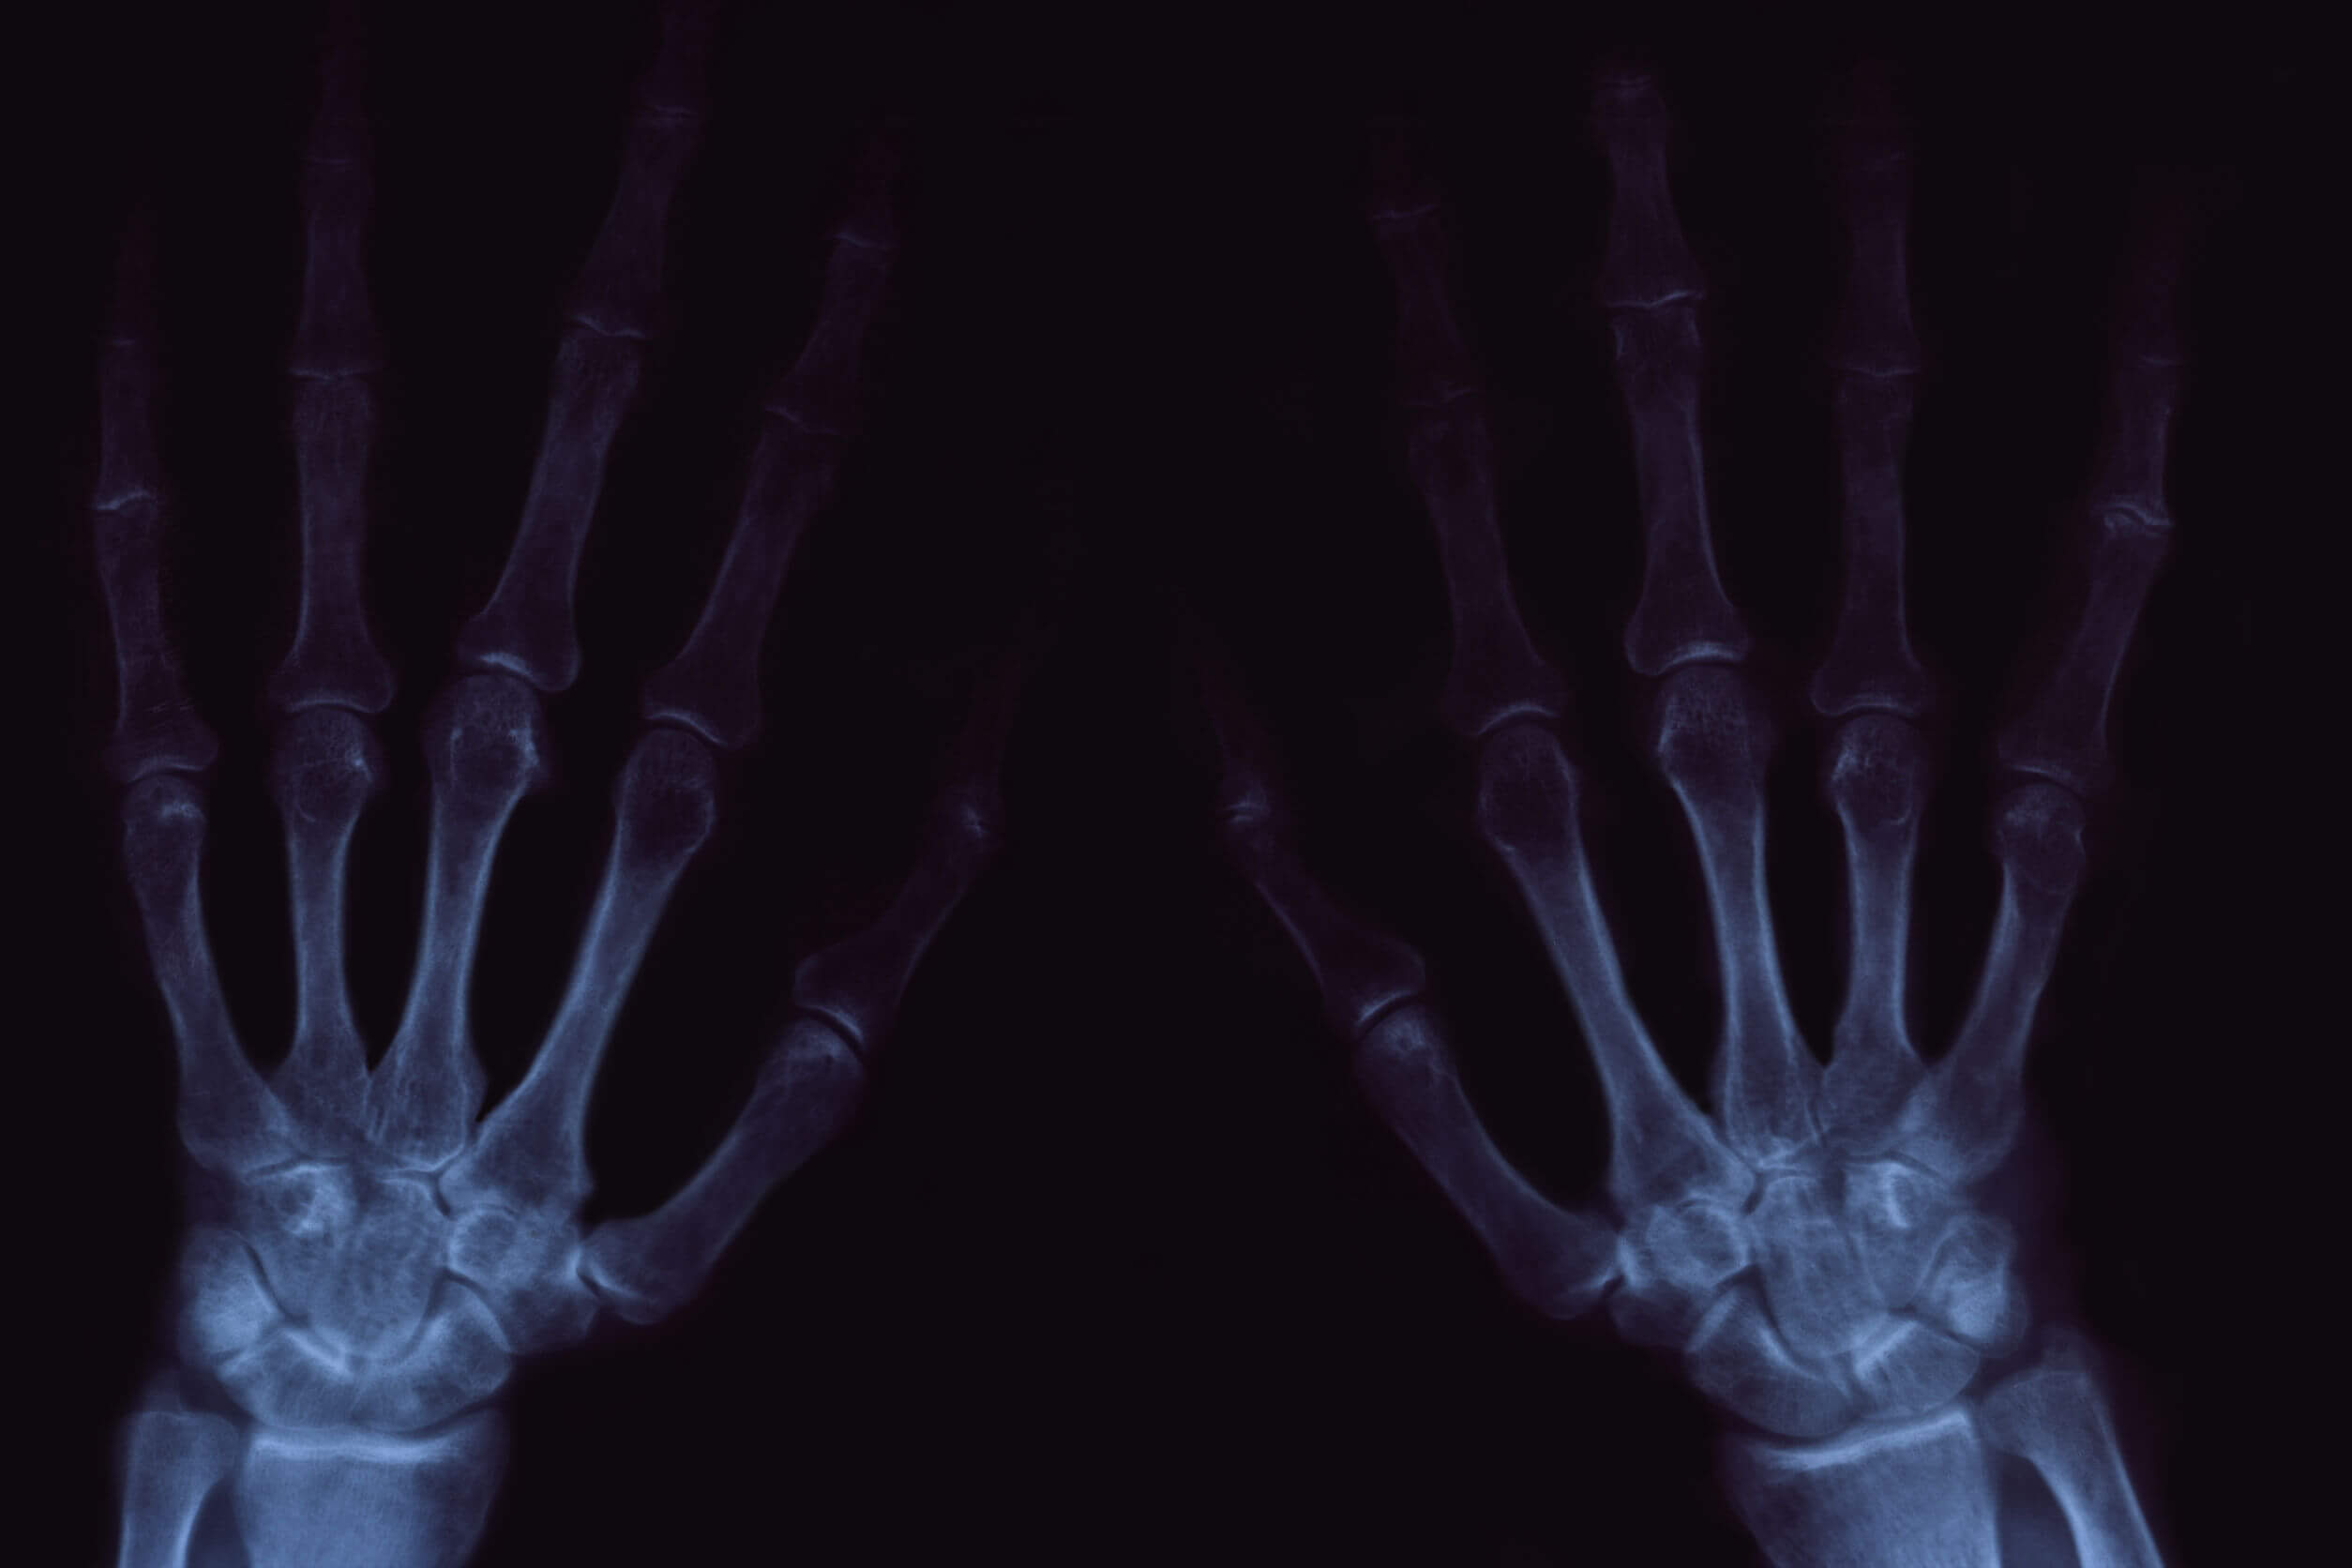 Les craquements des articulations peuvent être douloureux en cas d'arthrose.